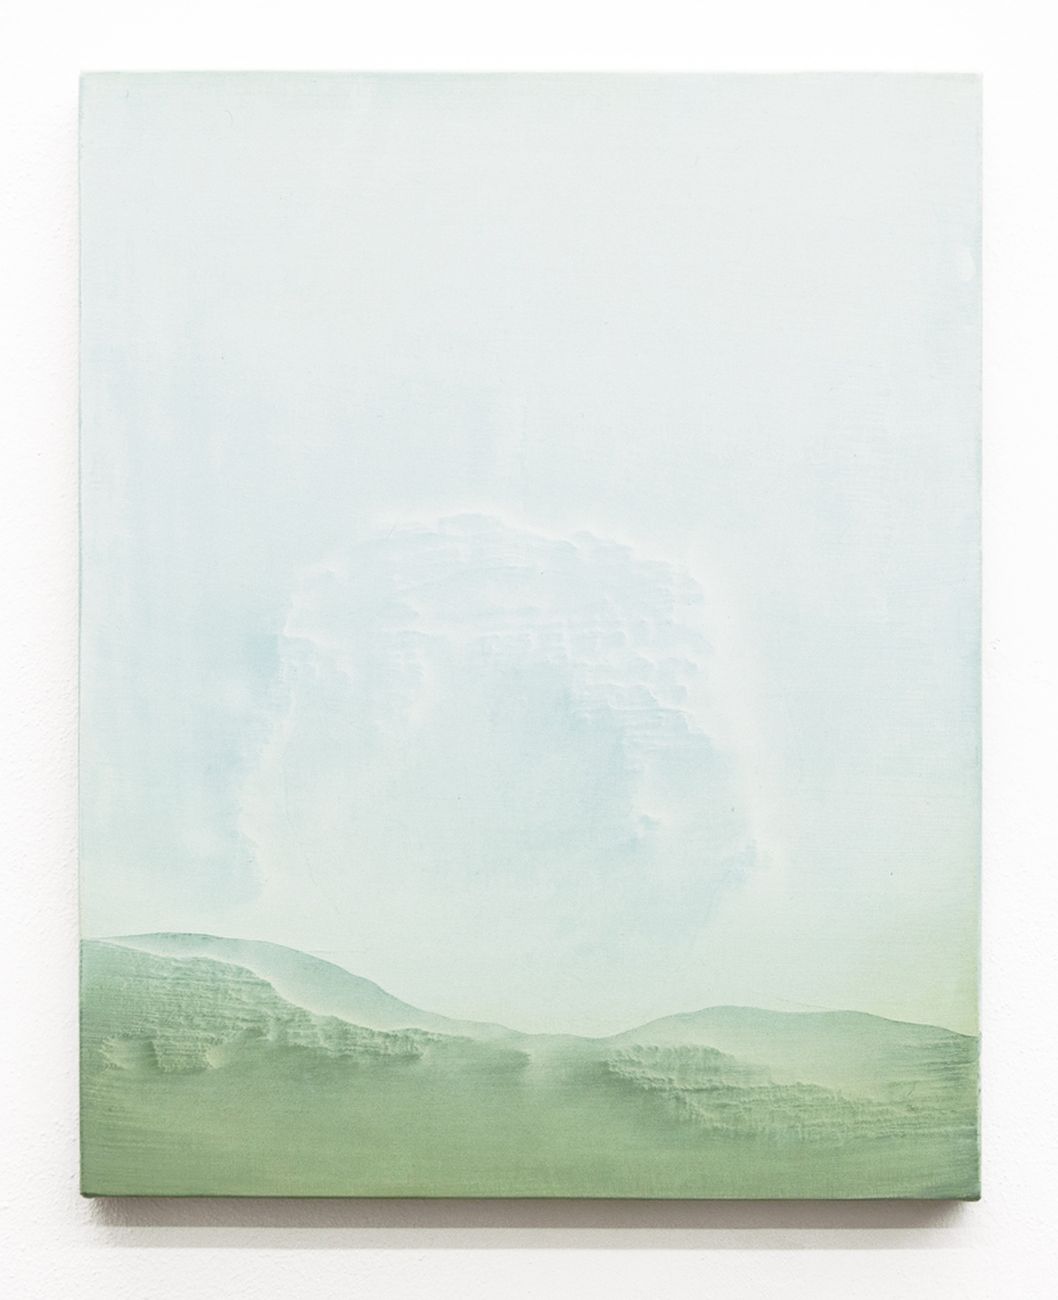 Giuseppe Adamo, The Morning After Your Death, 2018, acrilico su tela, 50x40 cm